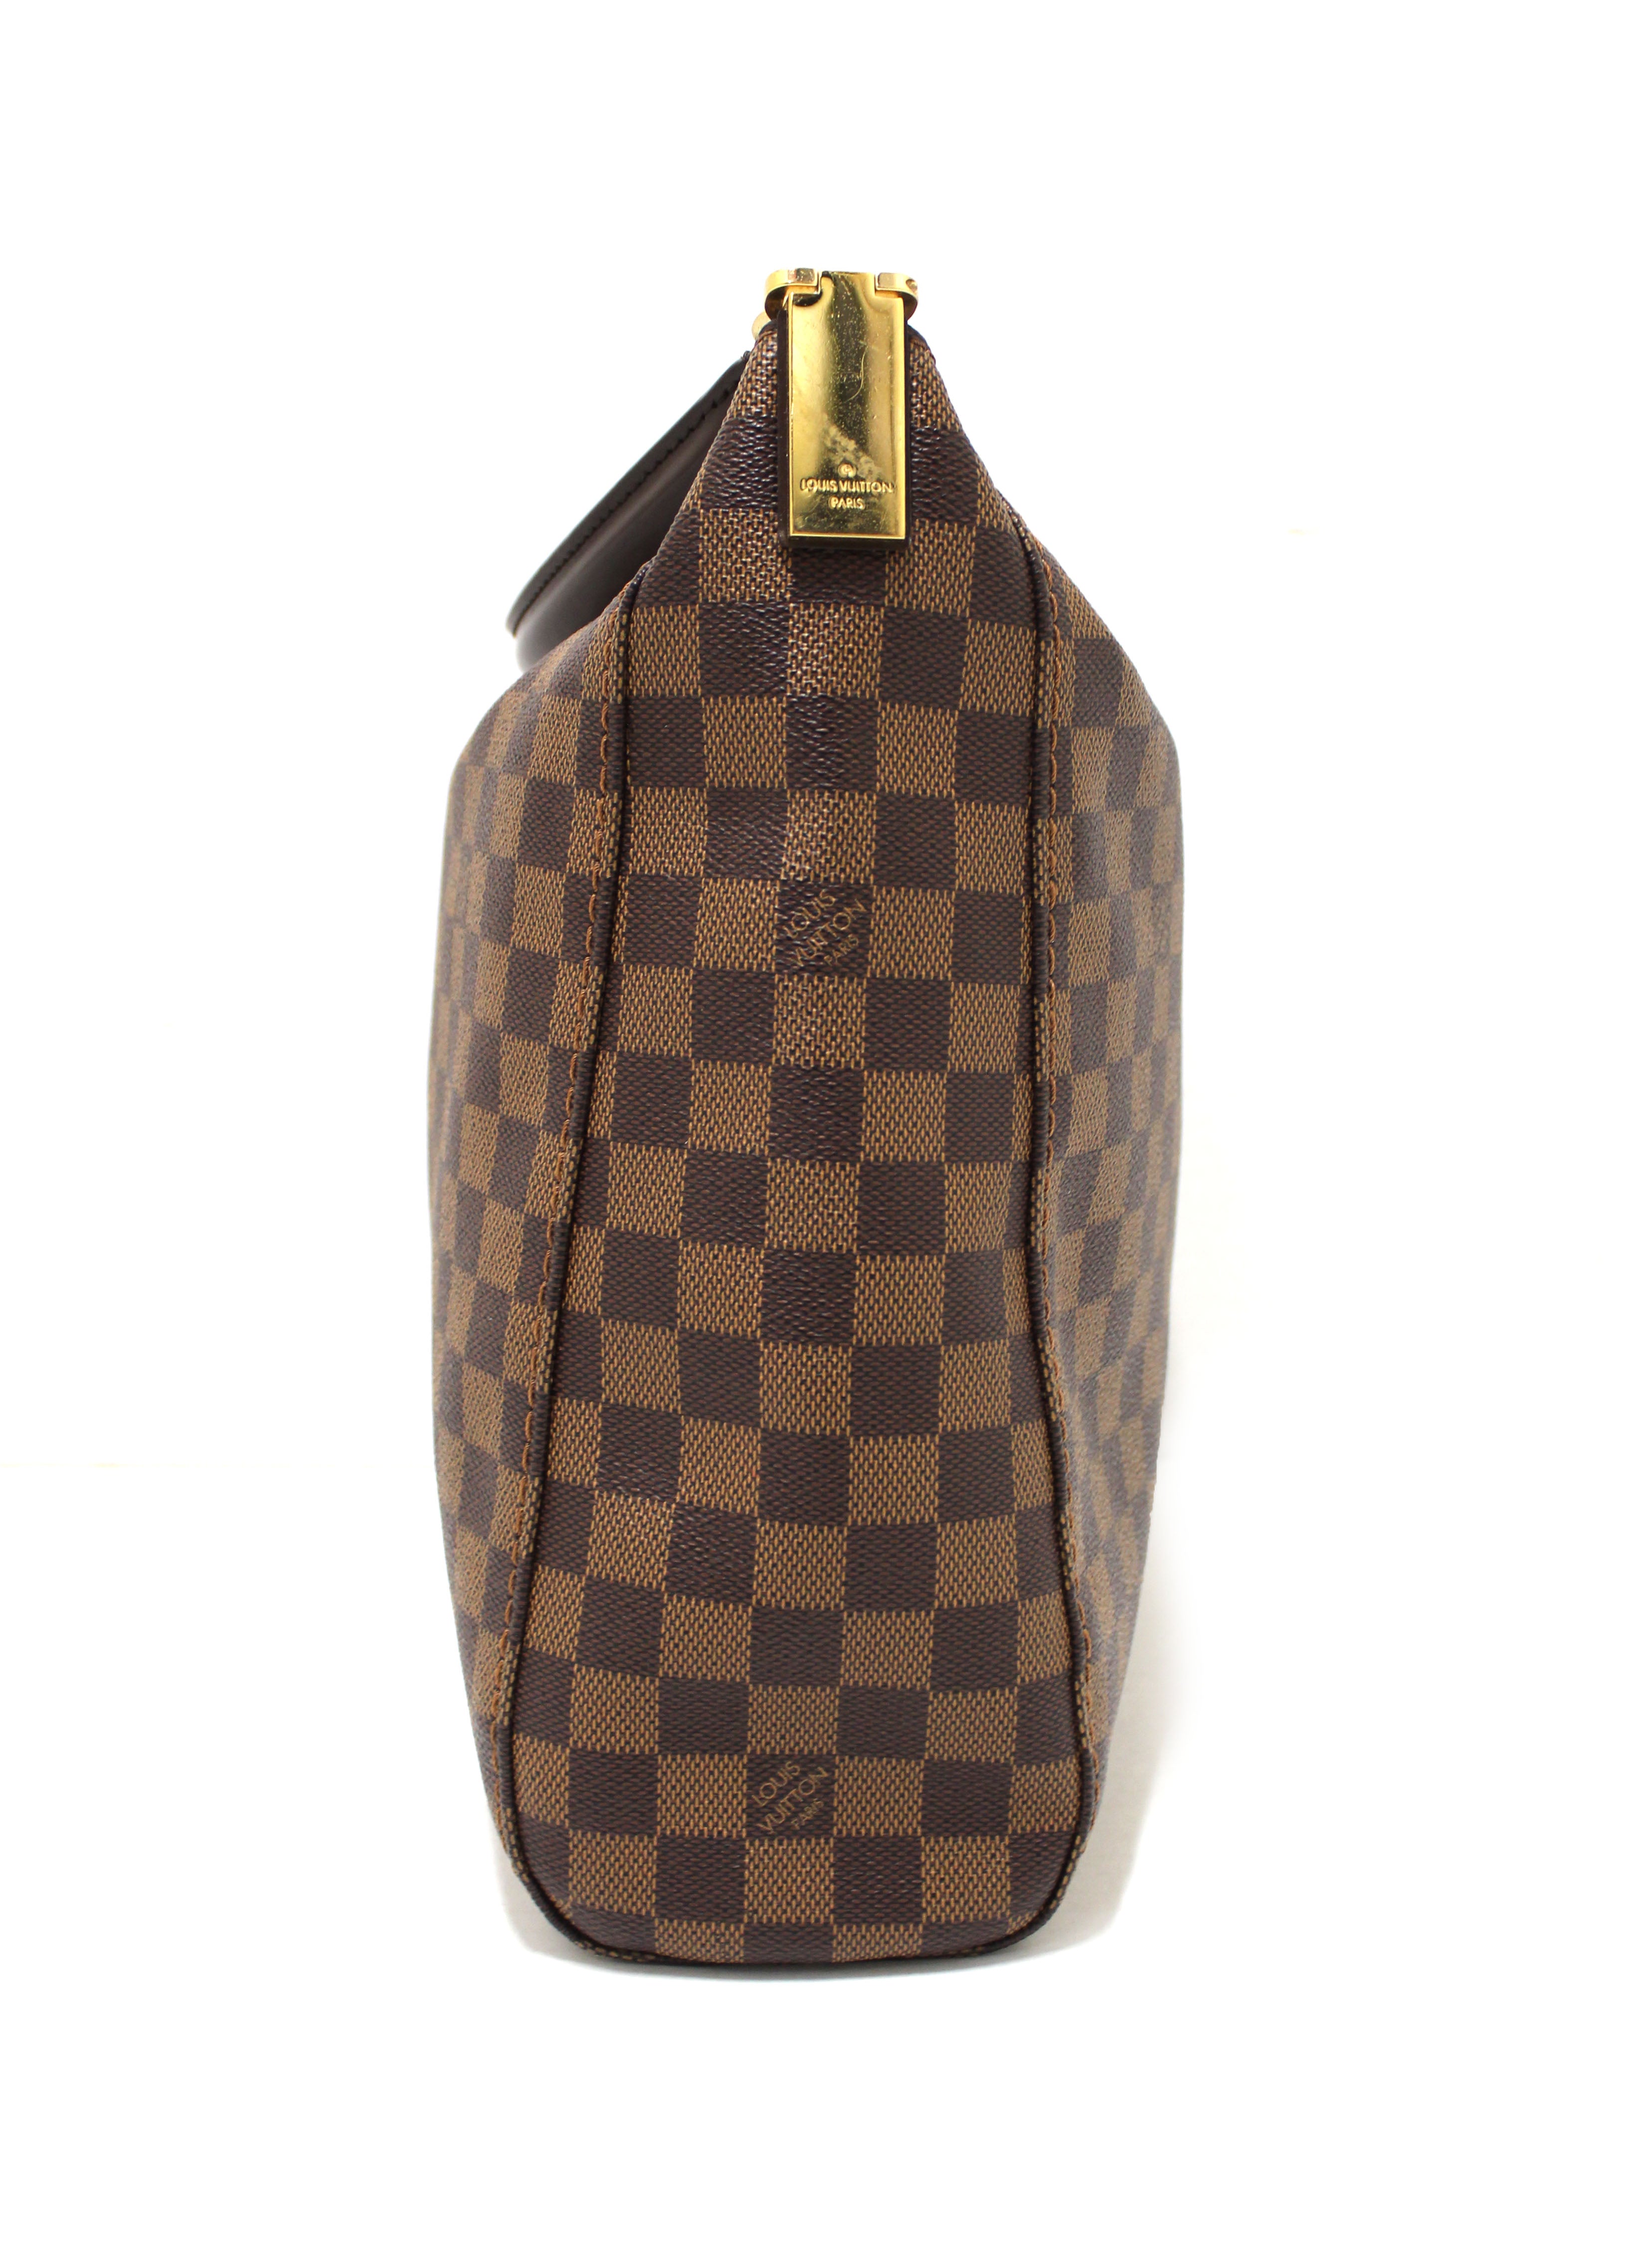 Copy of Authentic Louis Vuitton Damier Ebene Portebello PM Shoulder Bag